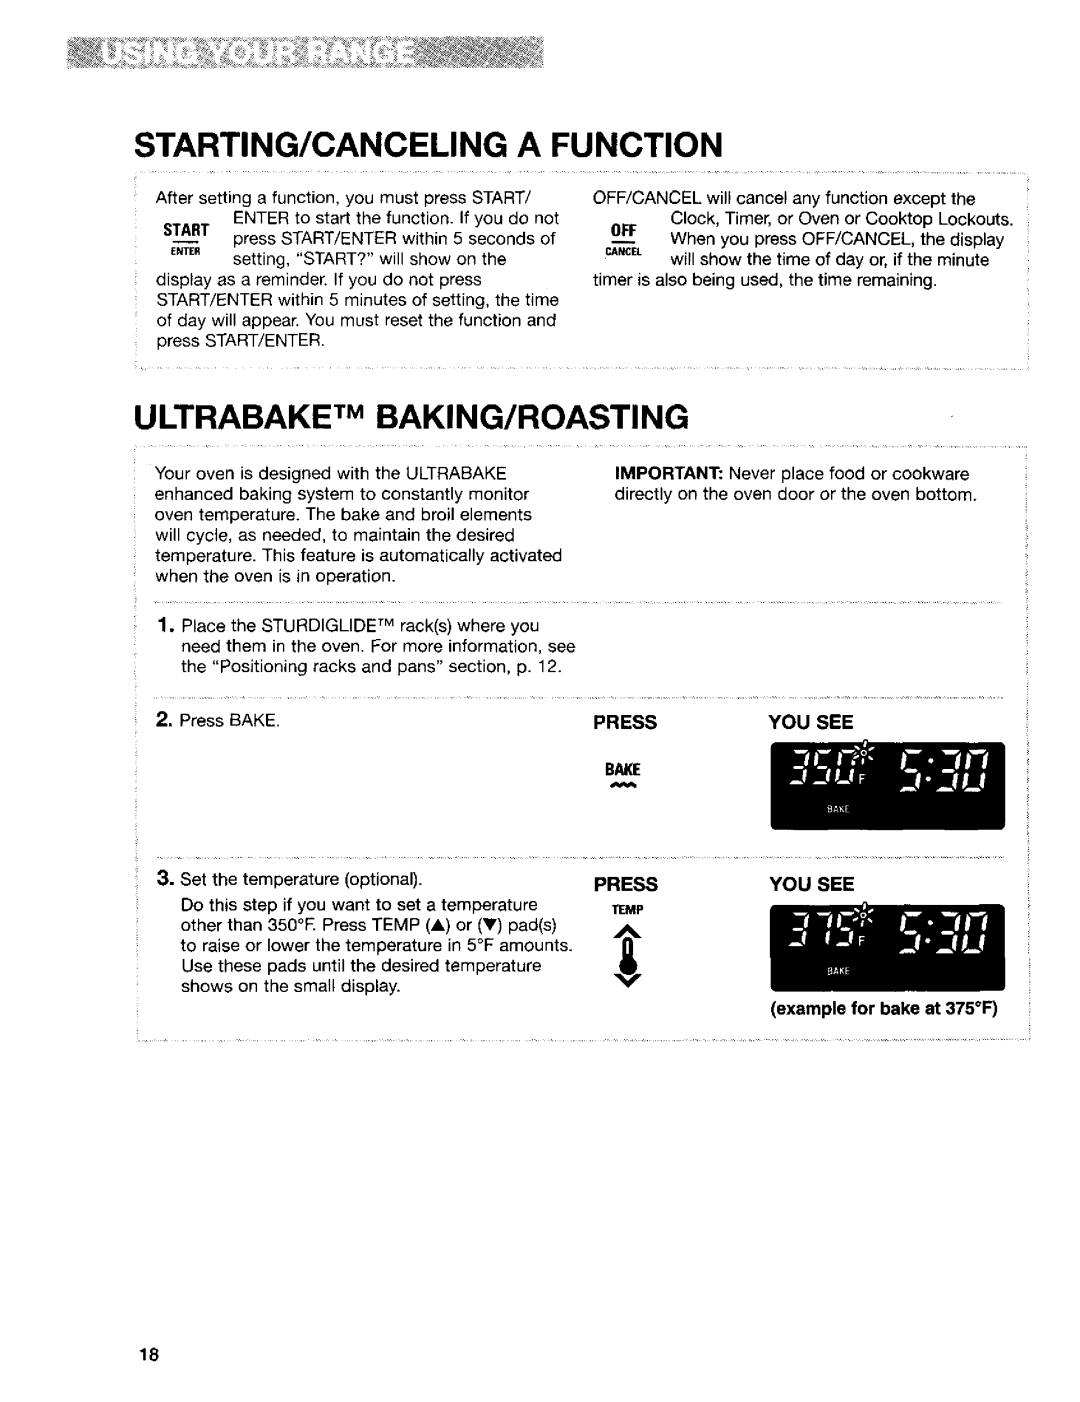 Kenmore 665.95822, 665.95824, 665.95829 manual Starting/Canceling A Function, Ultrabake Tm Baking/Roasting 